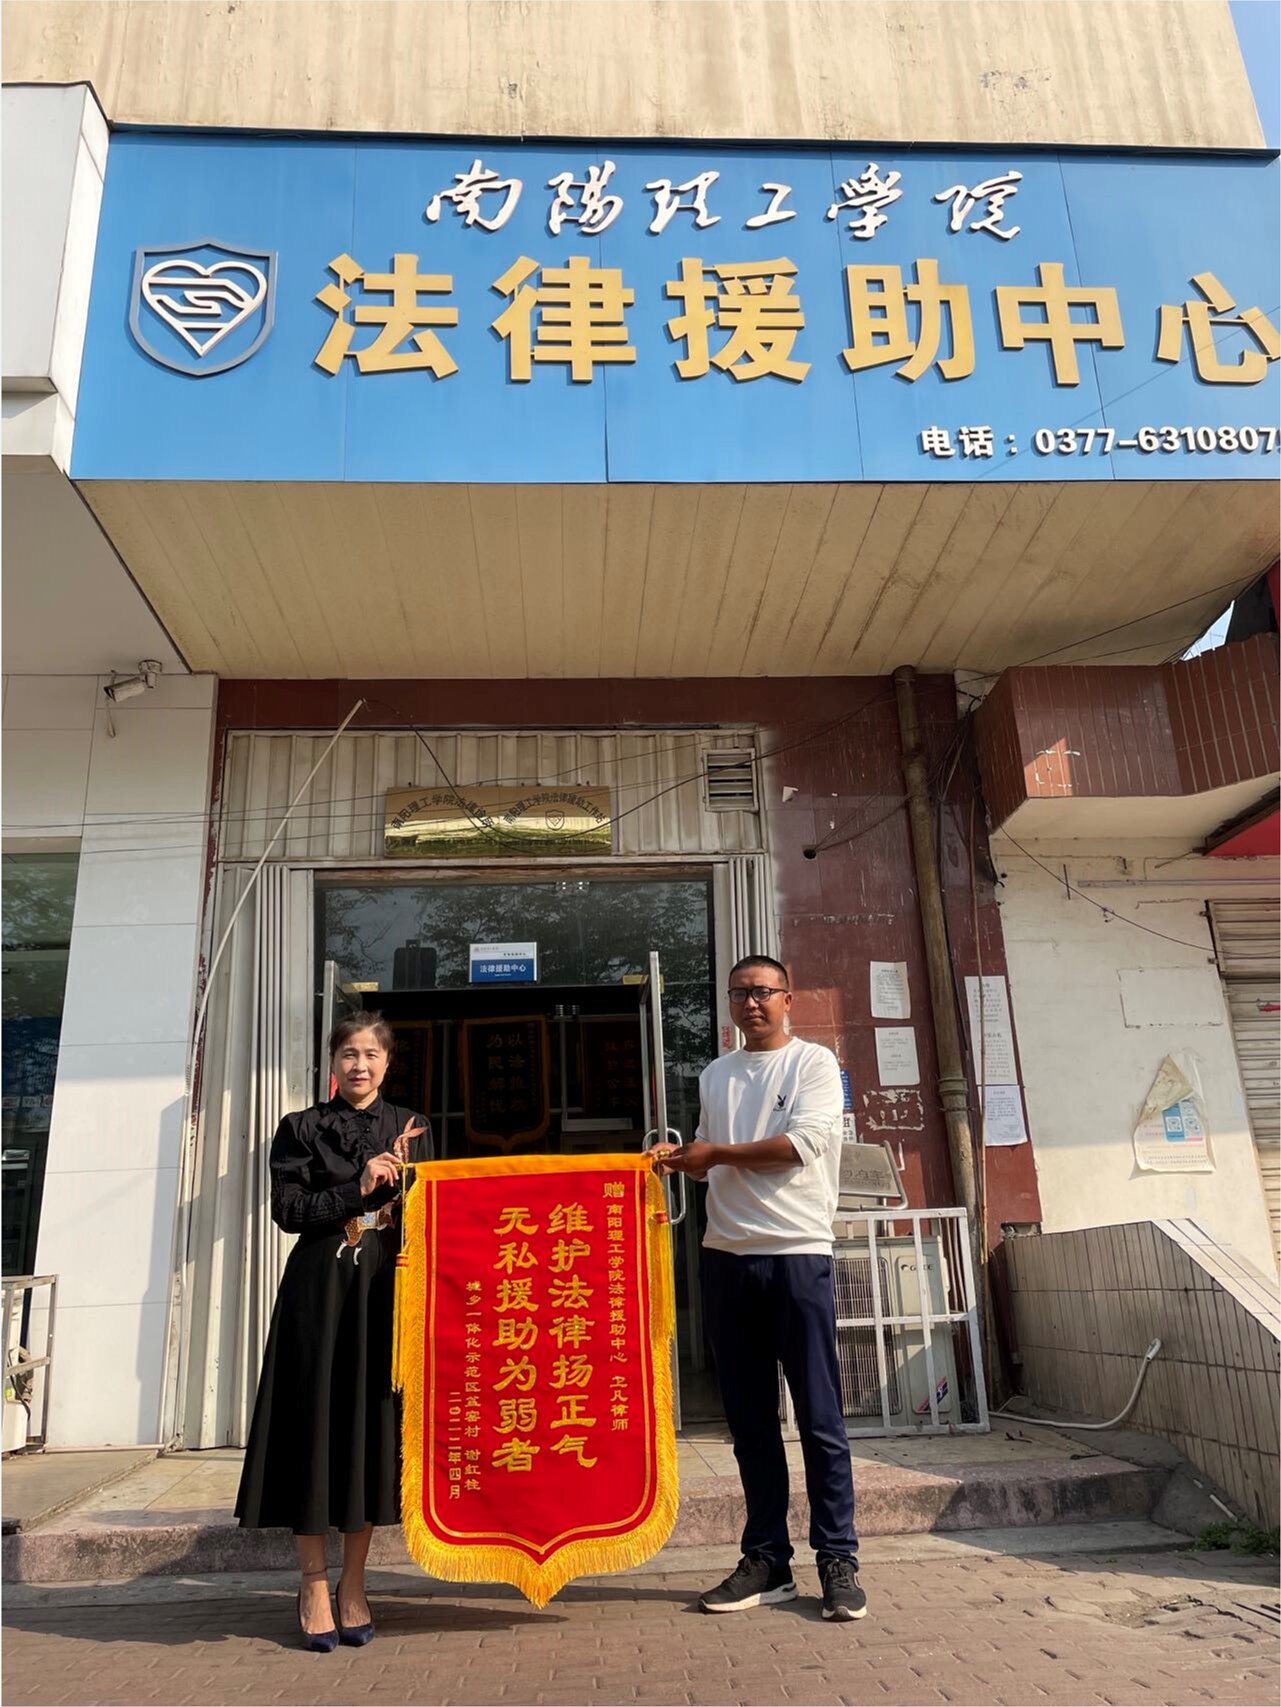 甘肃省张掖市民乐县法律援助中心“三抓三促”提升援助便捷圈